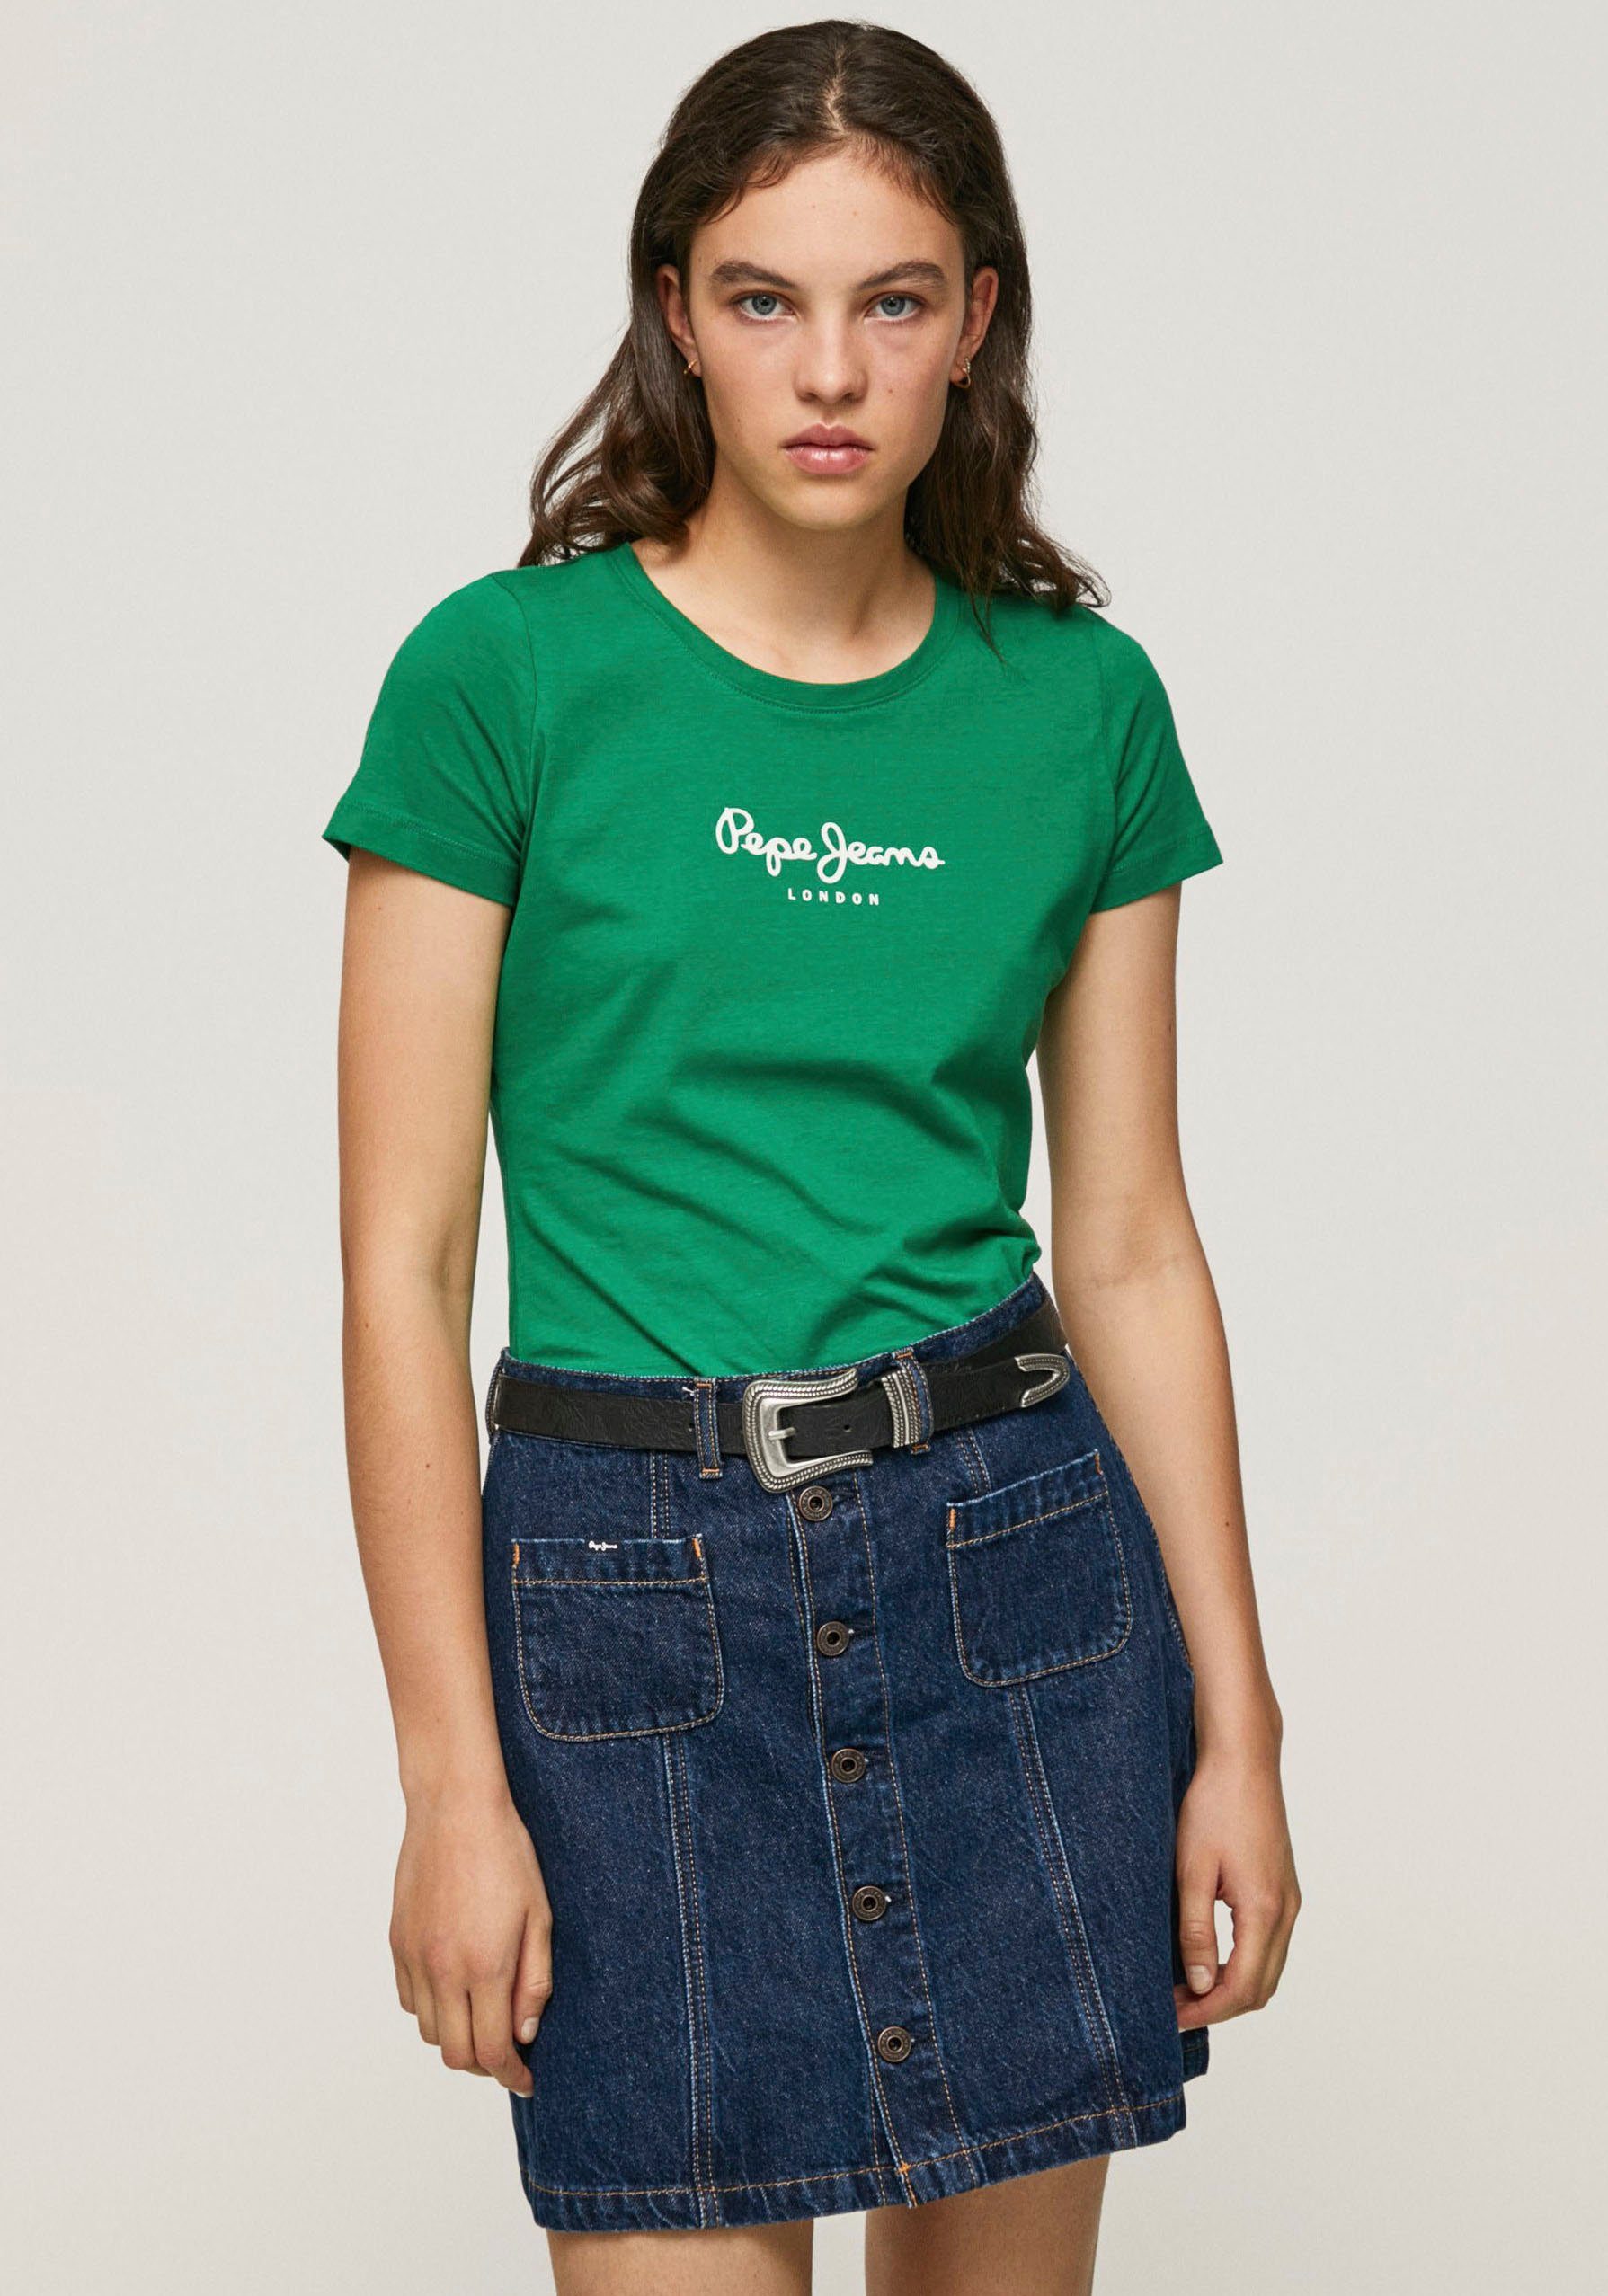 Pepe Jeans T-Shirt VIOLETTE in figurbetonter Passform und in schlichter unifarbener Optik 664SHERWOOD